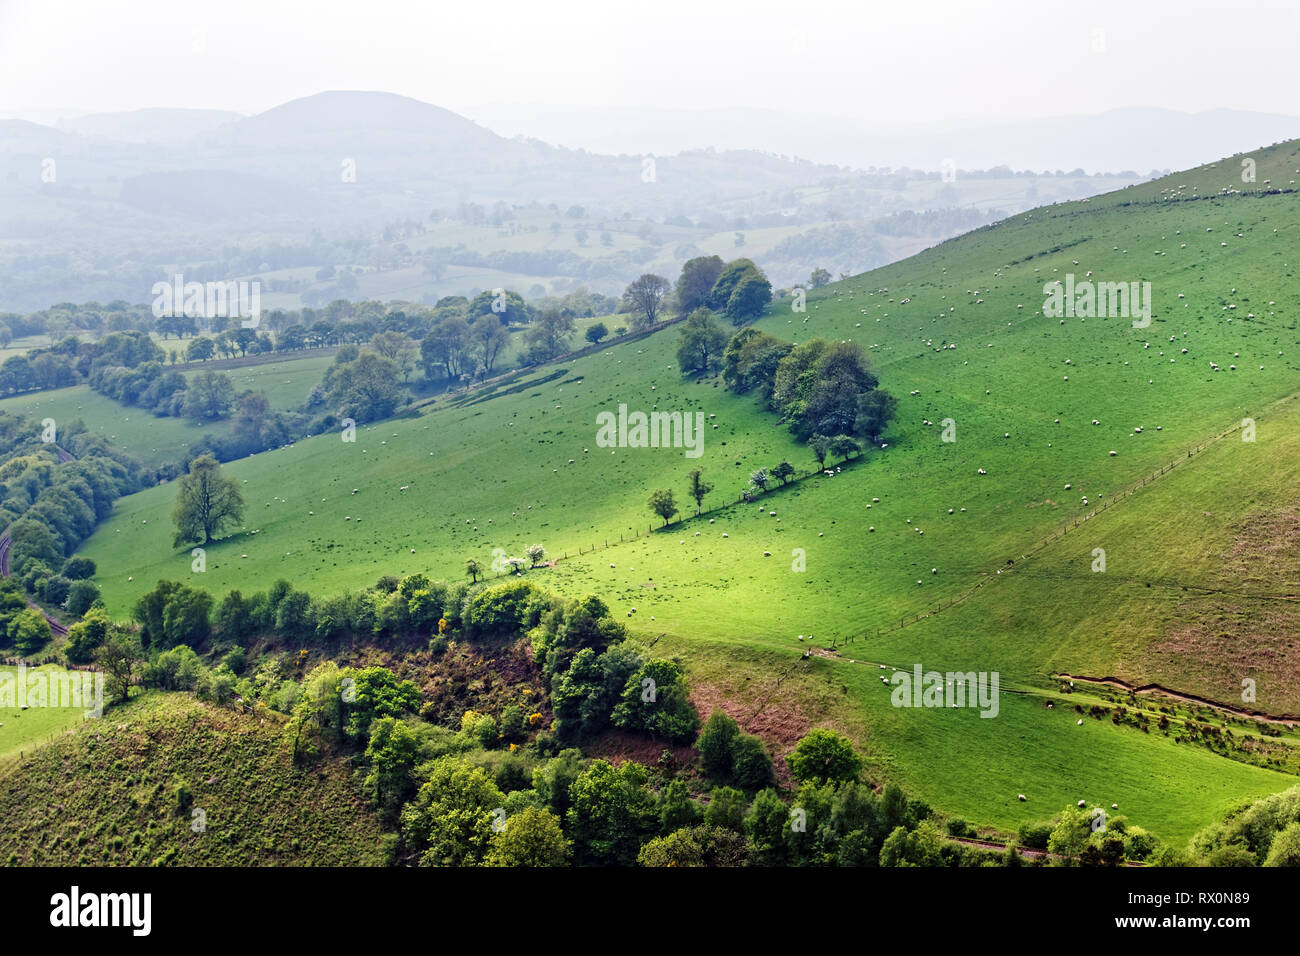 42,518.02948 Schafe auf schöne foggy Green walisischen Hügel Ackerland Landschaft Tywi Valley's rollenden Weide Hügel, Landwirtschaft, Wales, Großbritannien Stockfoto